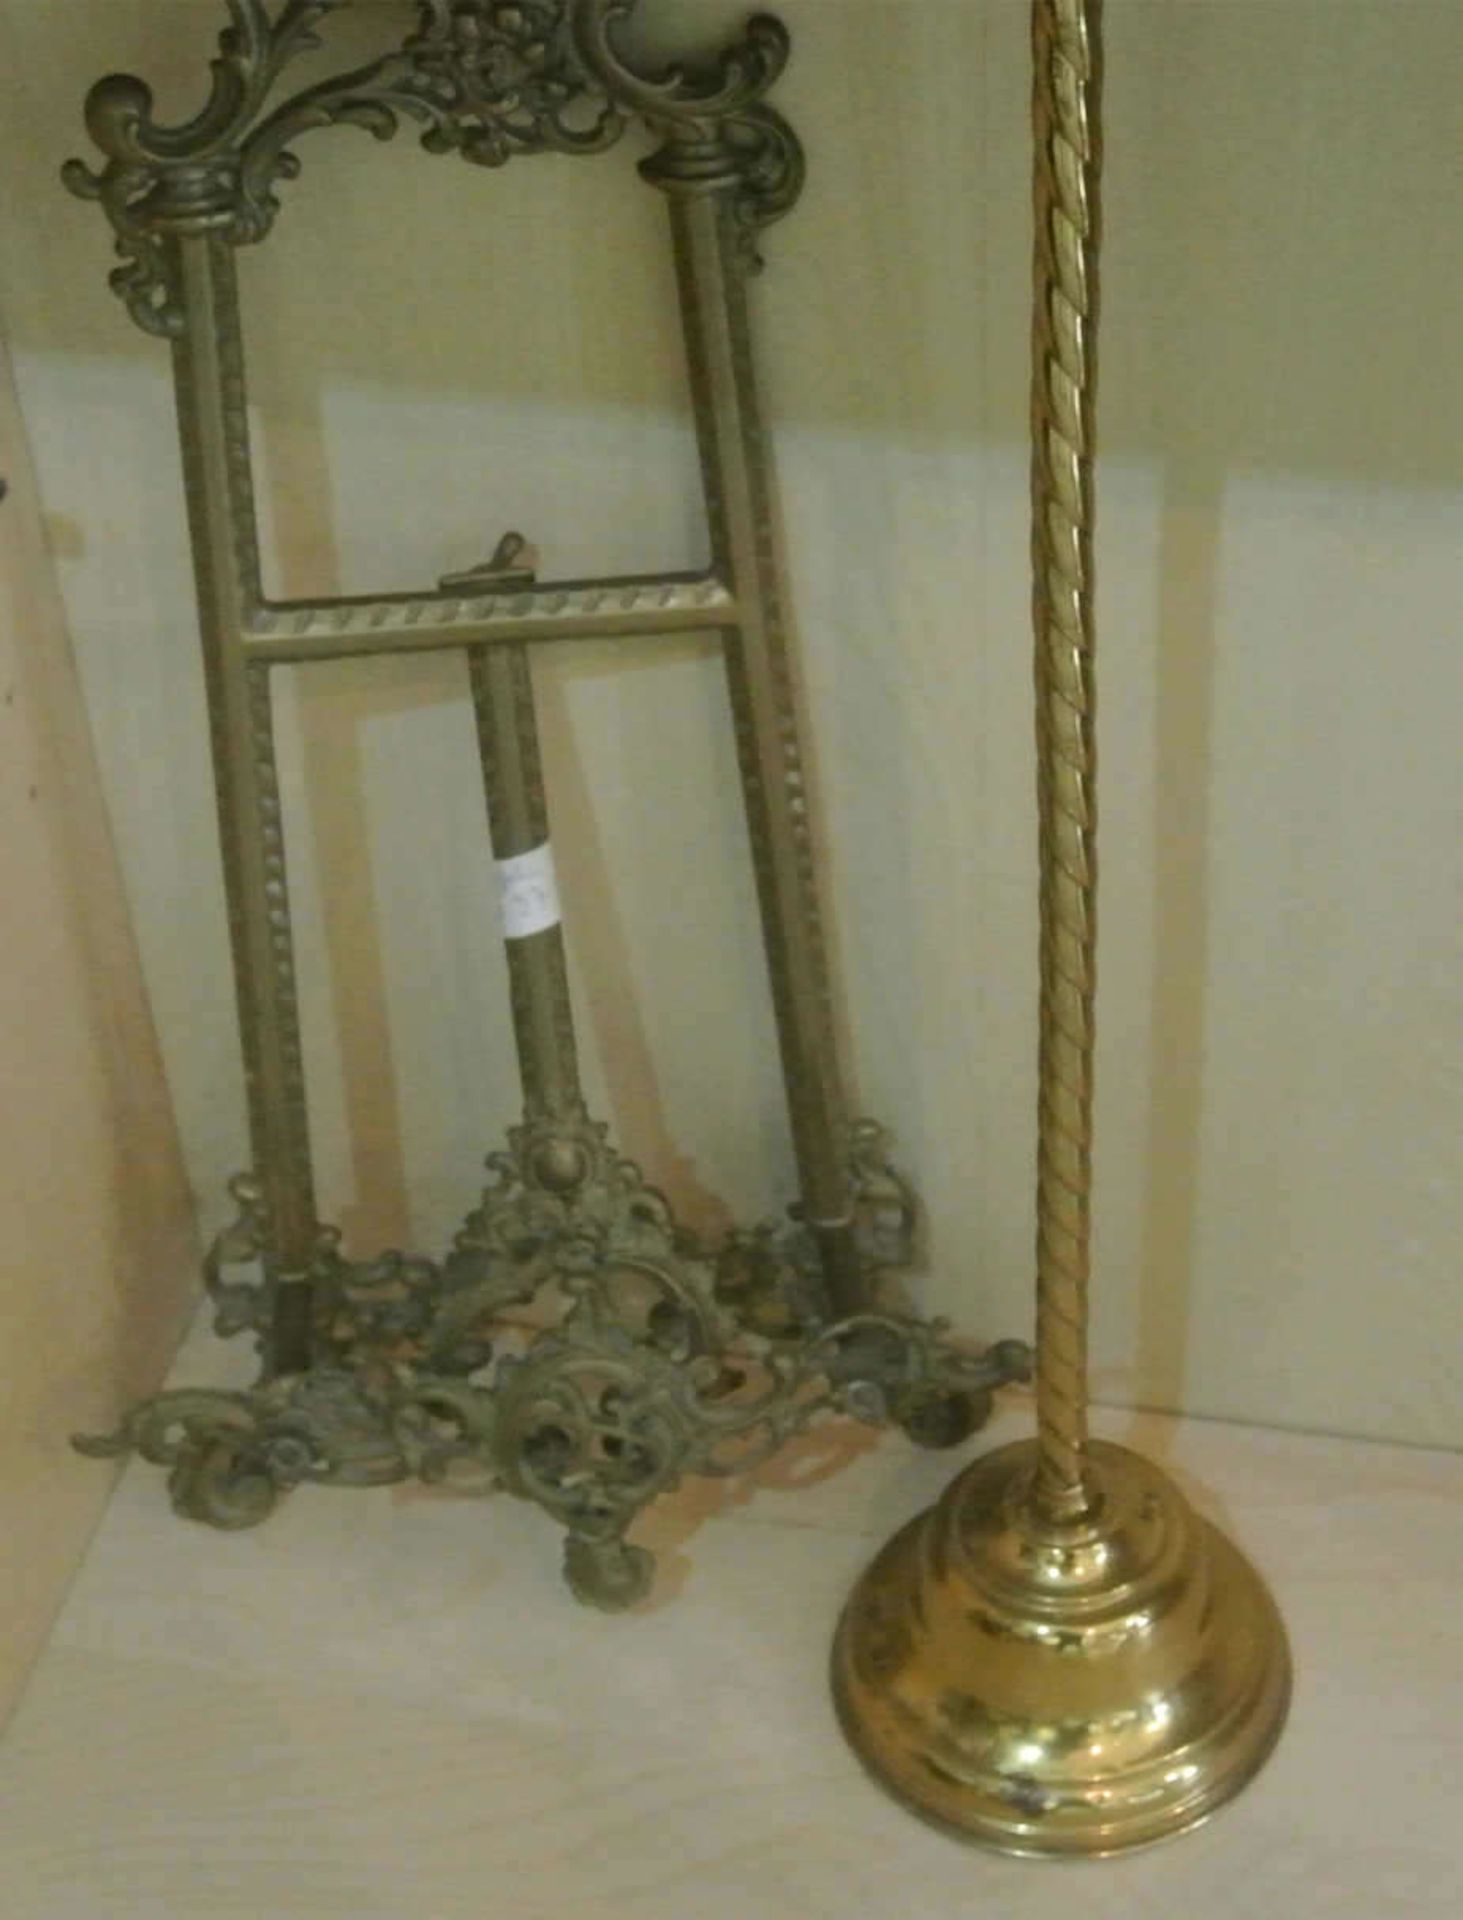 Messingstaffelei mit aufwendiger Verzierung, Höhe ca. 50 cm, guter Zustand, sowie 1 Lampenständer - Bild 2 aus 2